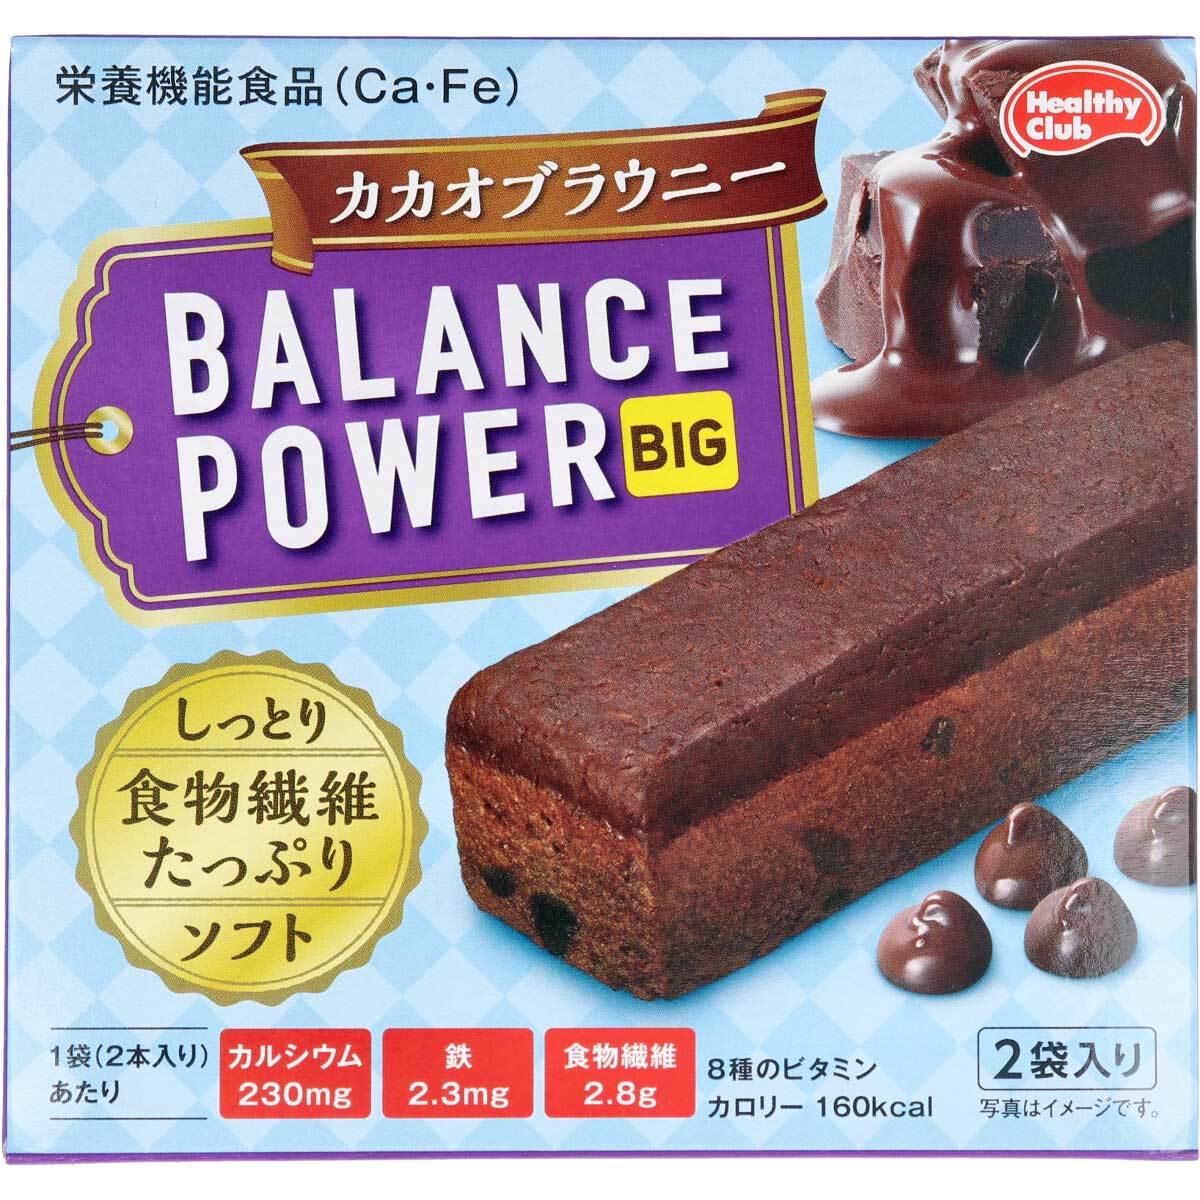  summarize profit * healthy Club balance power big kakao brownie 2 sack (4ps.@) go in x [30 piece ] /k